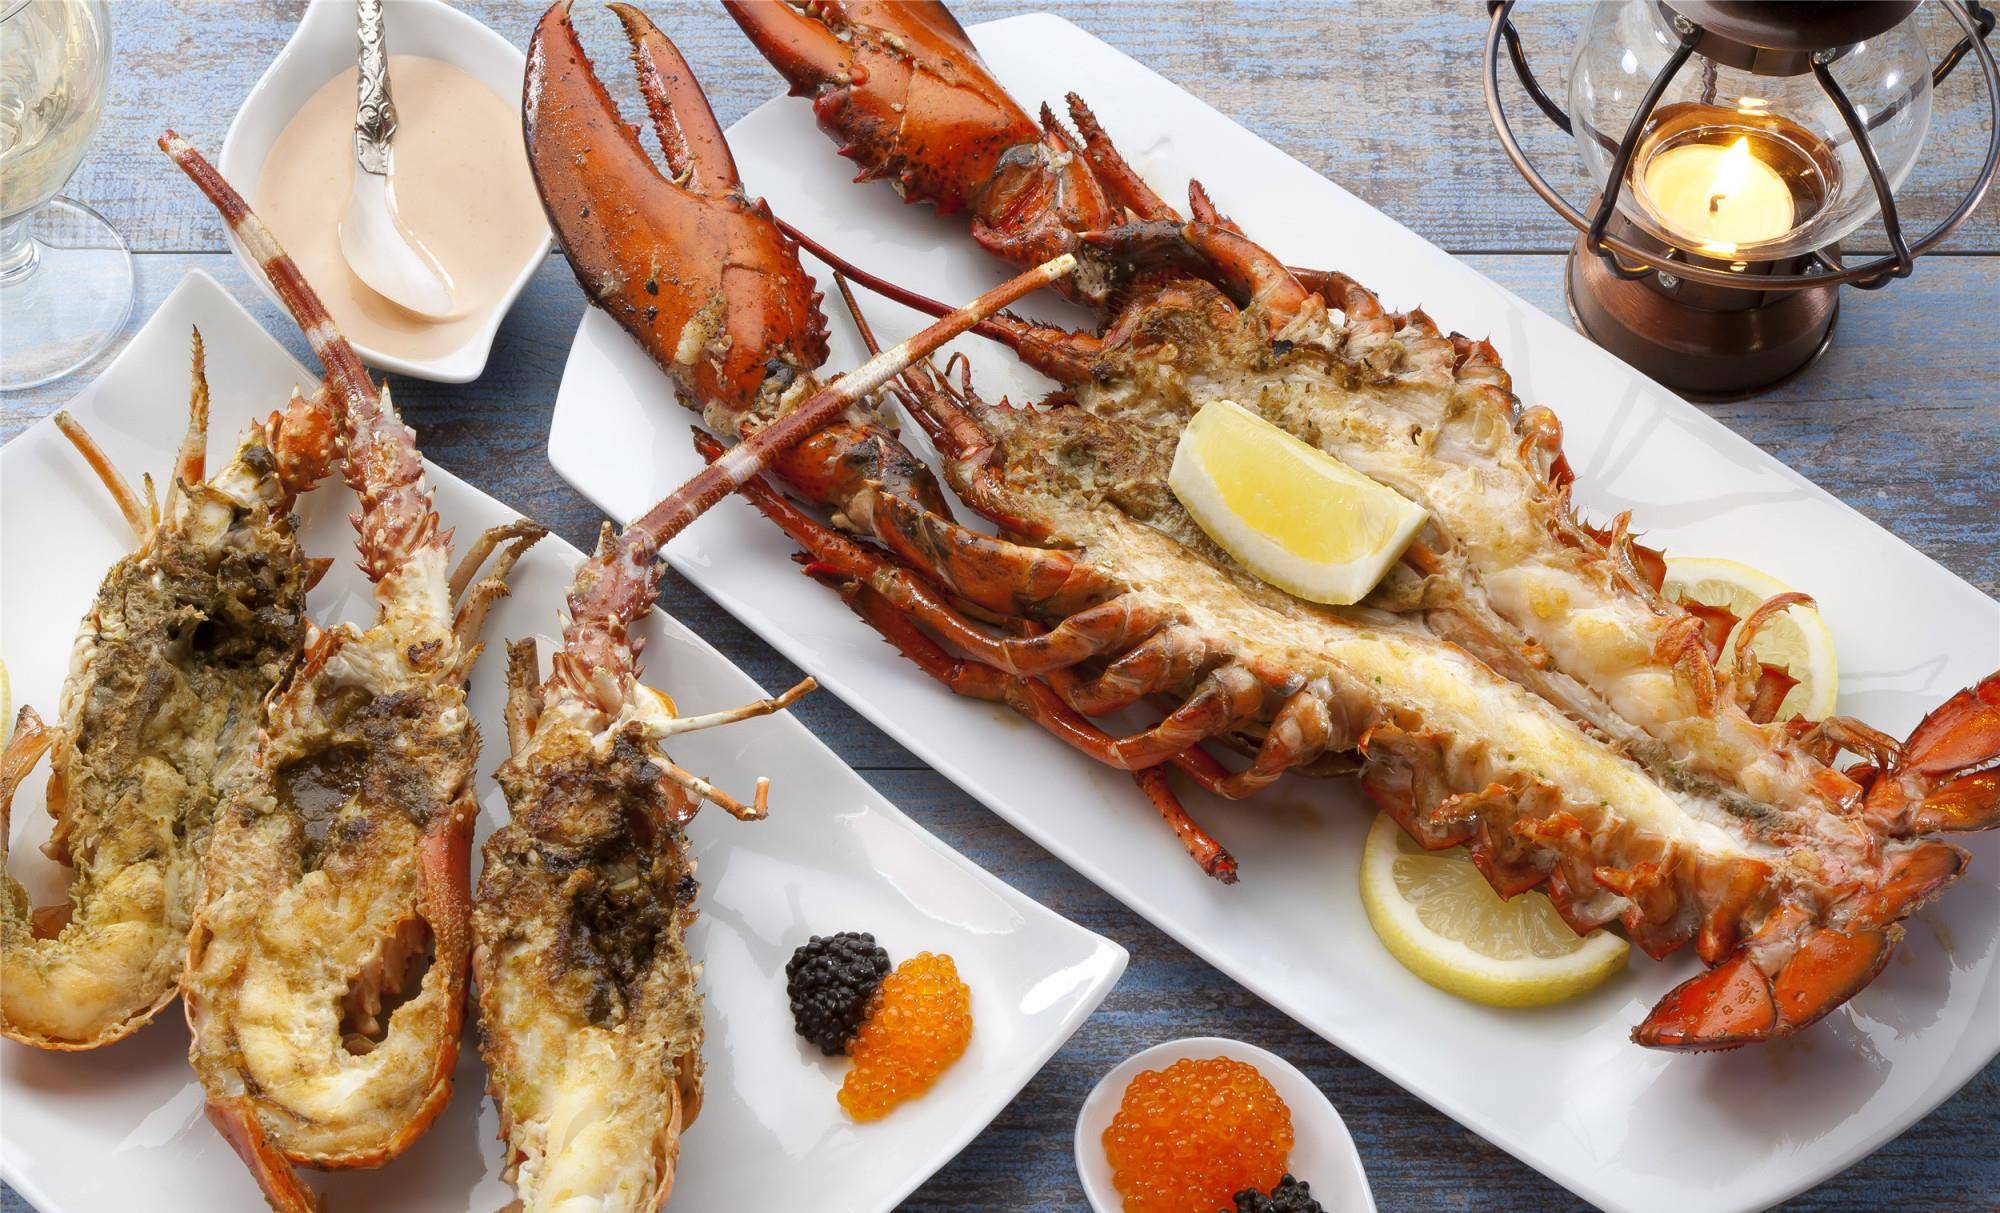 迪拜富人家庭的一日三餐，龙虾只能算家常菜，贫穷真是限制了想象